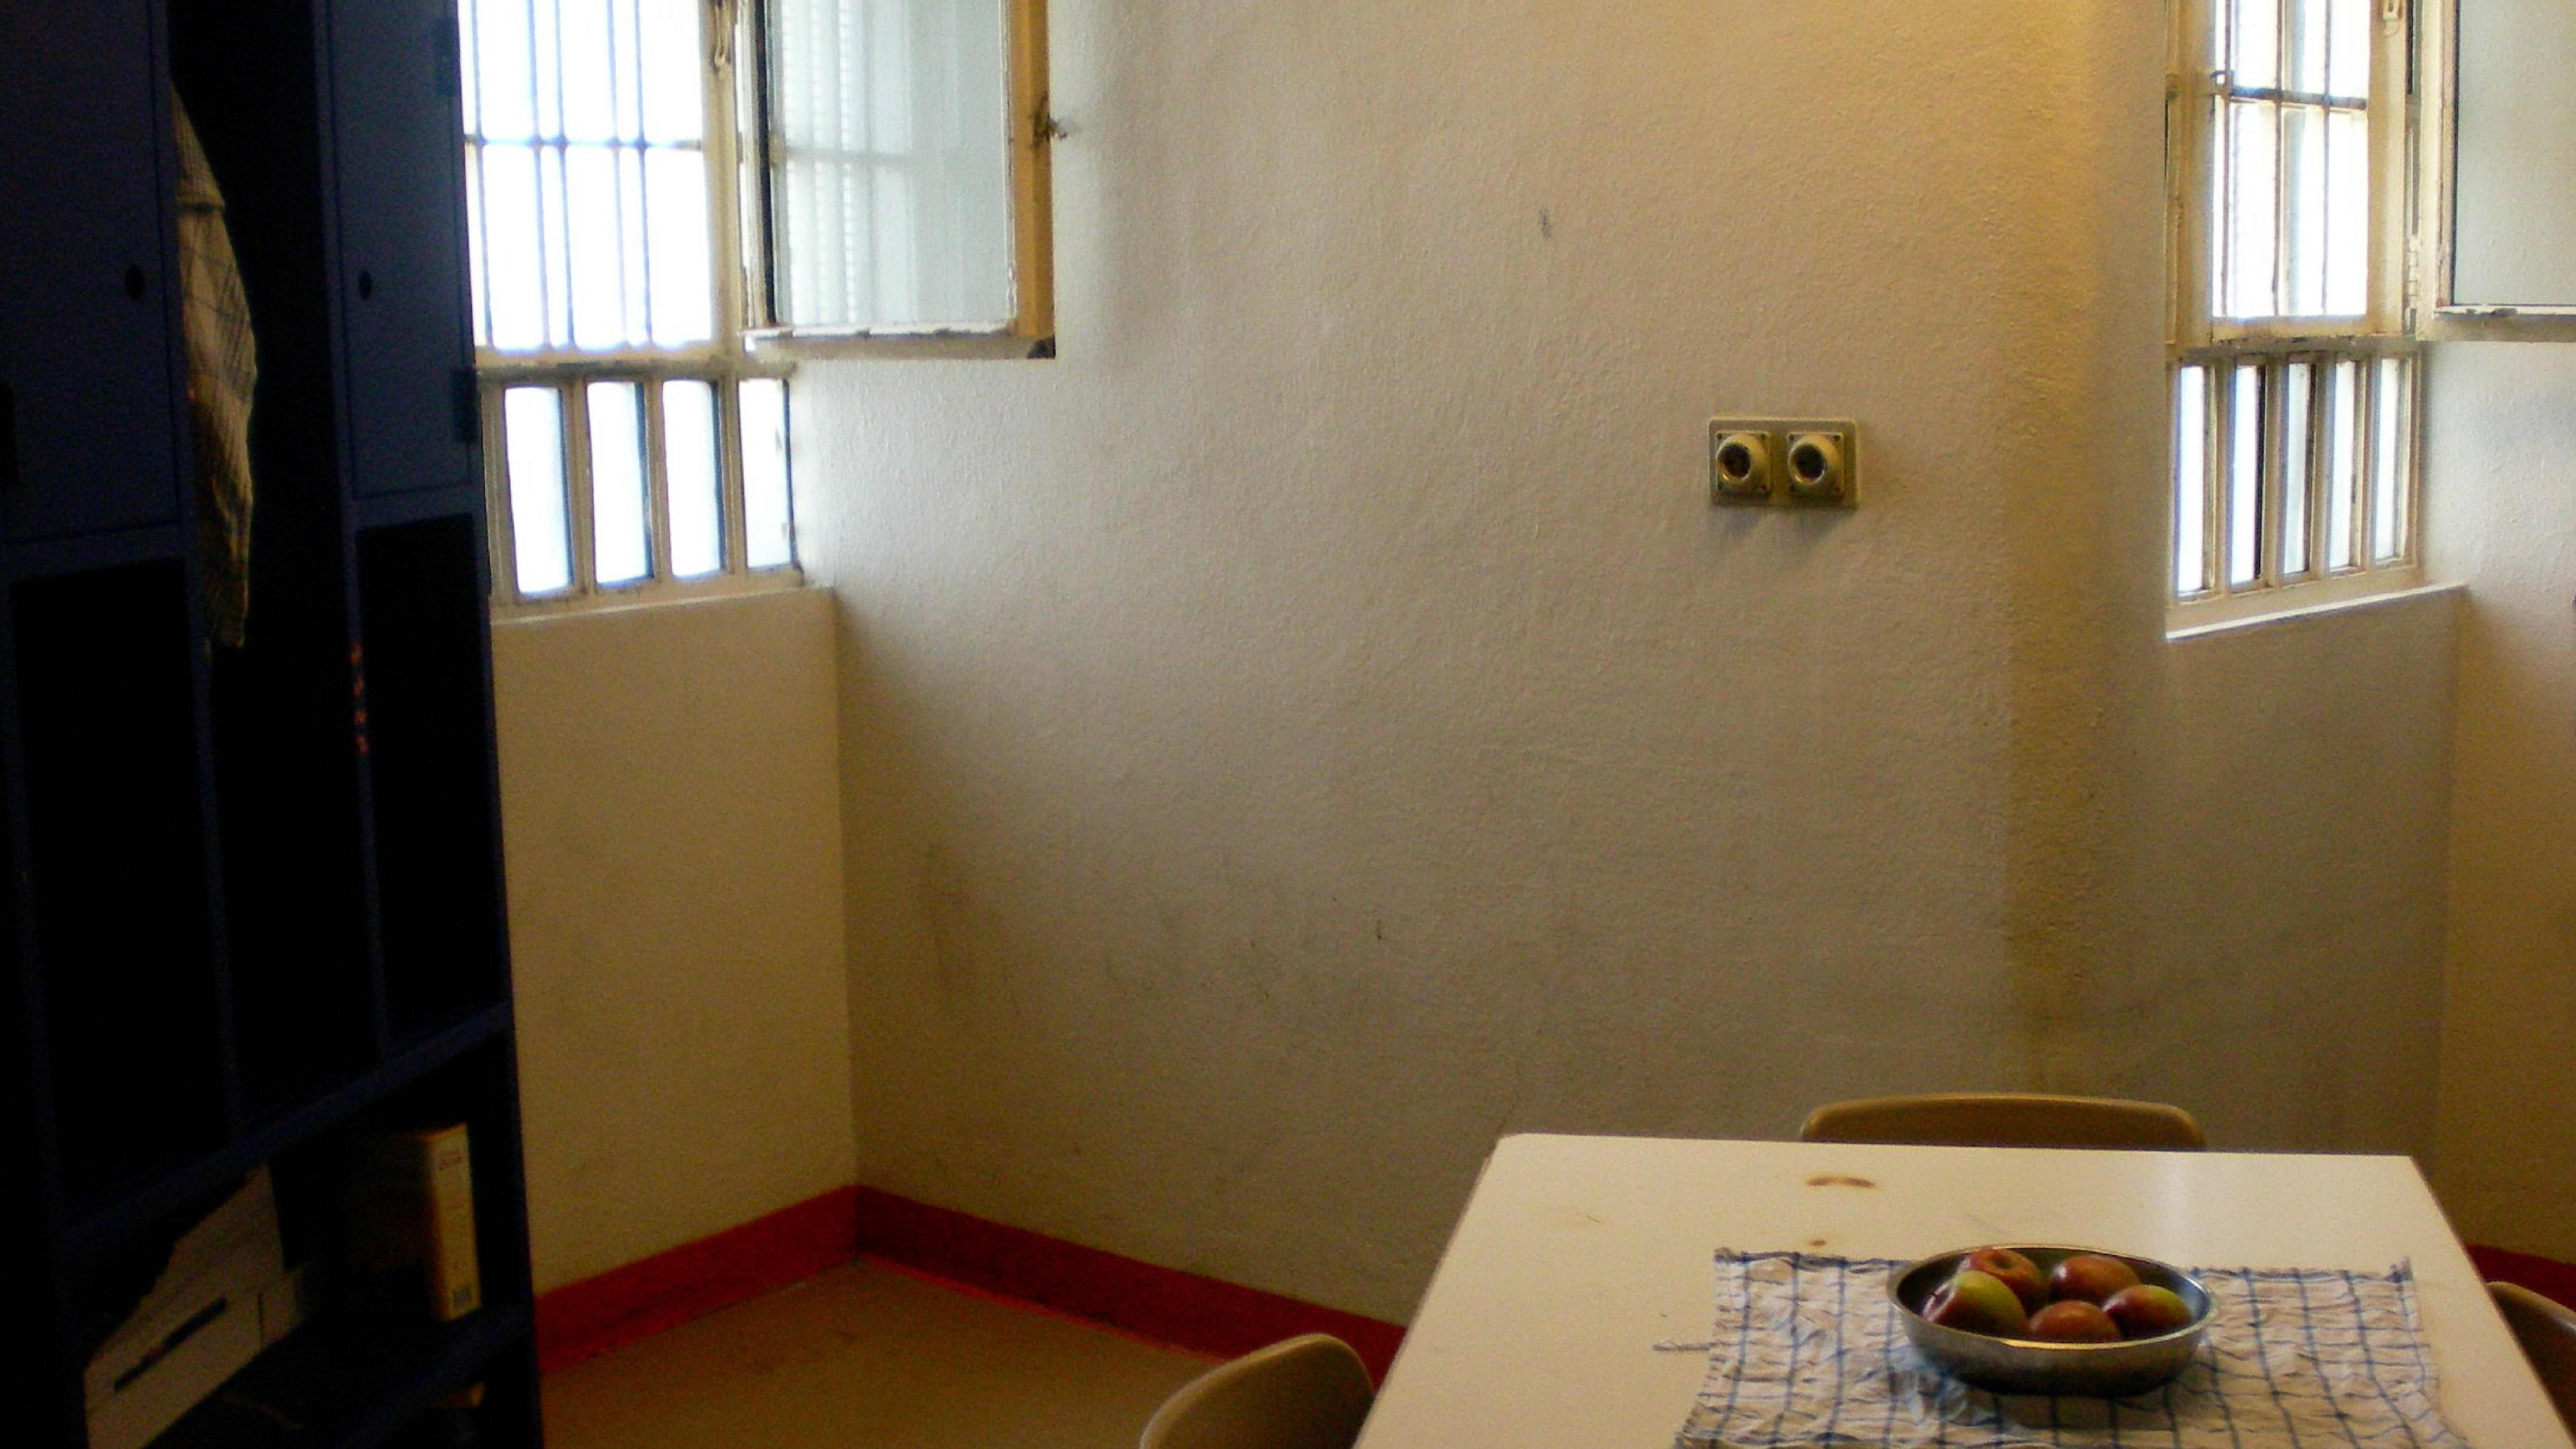 Hier starb 1977 Andreas Baader, später wurden in dieser Zelle vier Häftlinge untergebracht.